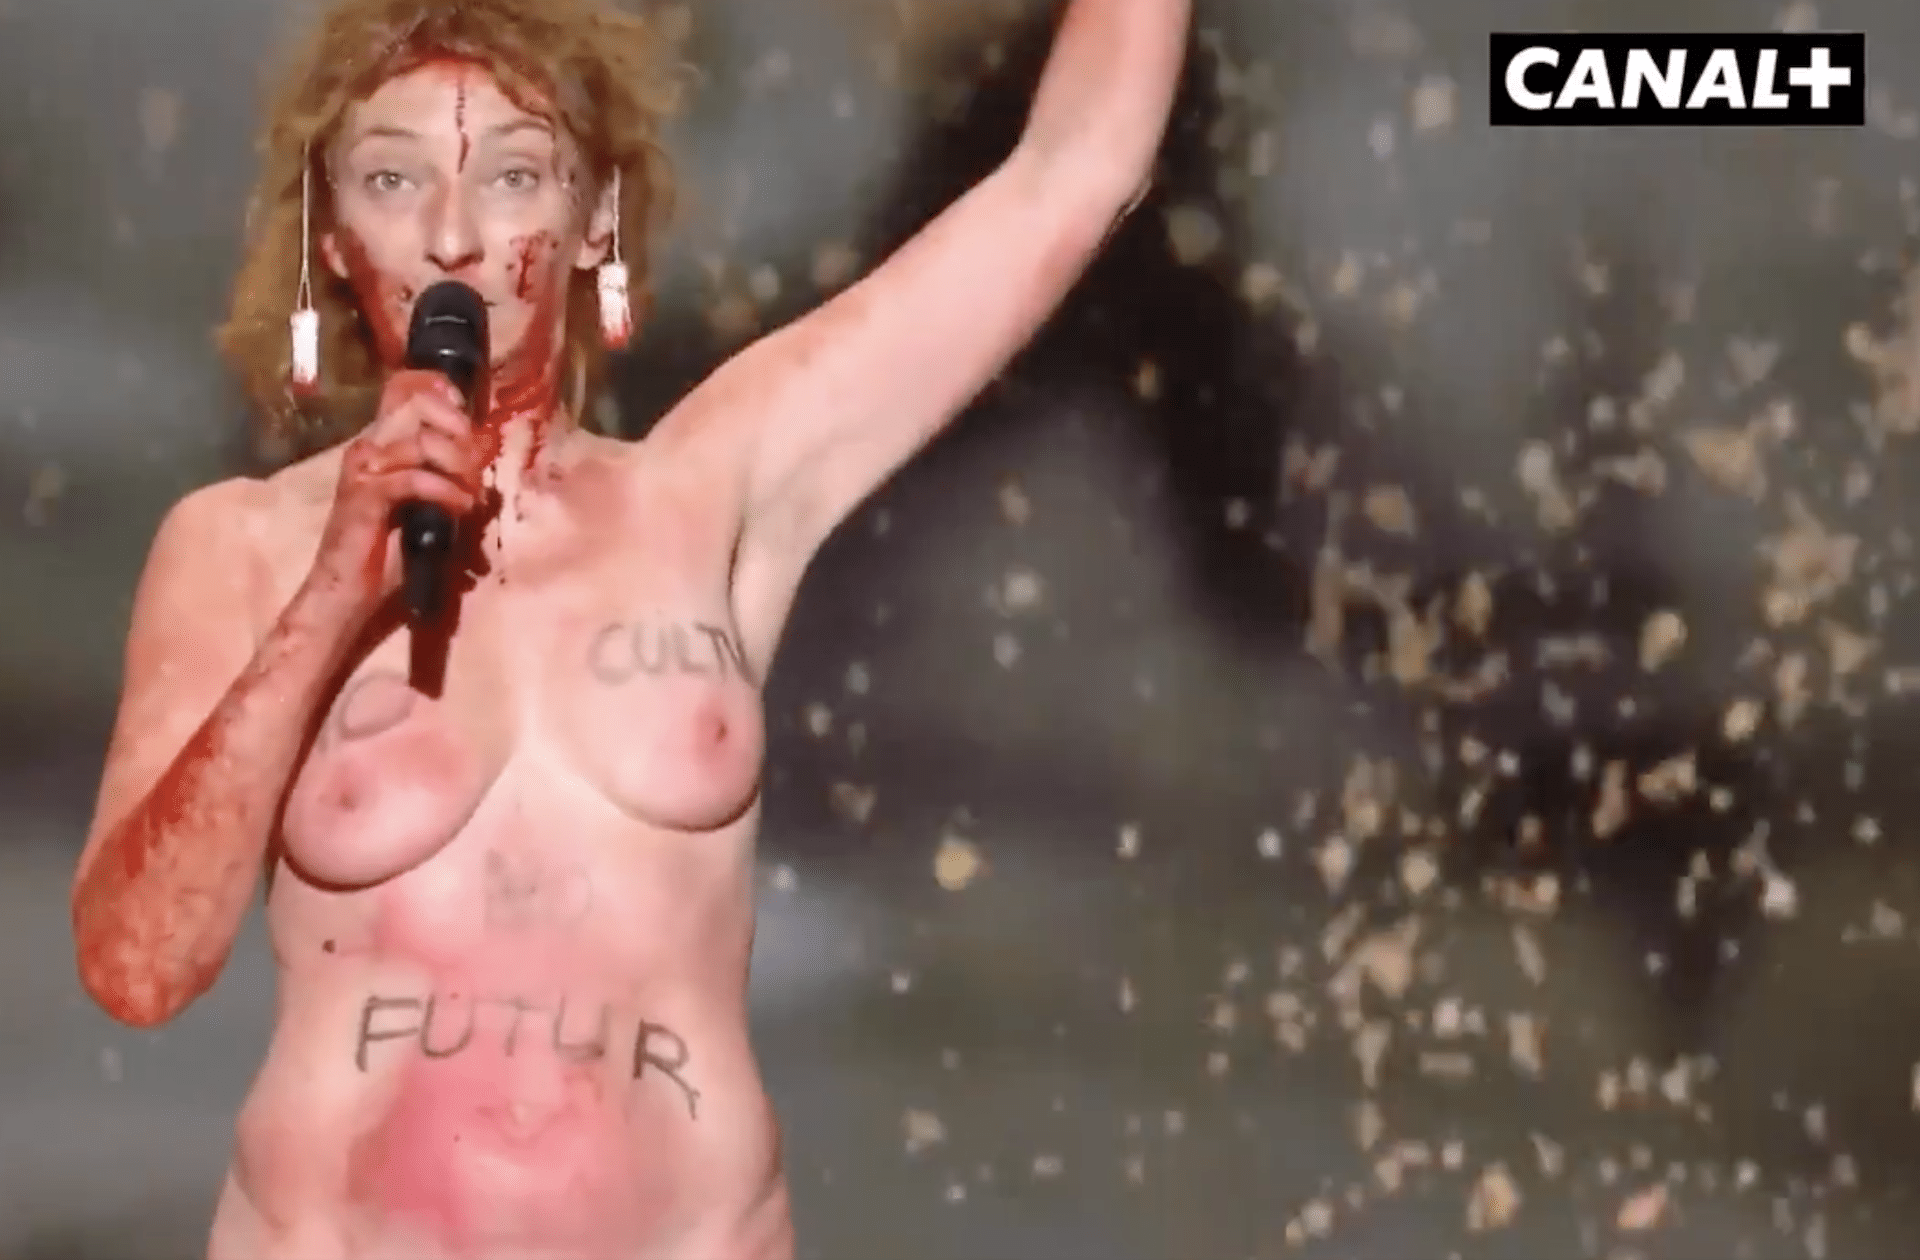 Durant les César, l’actrice Corinne Masiero a fait de la nudité un outil politique